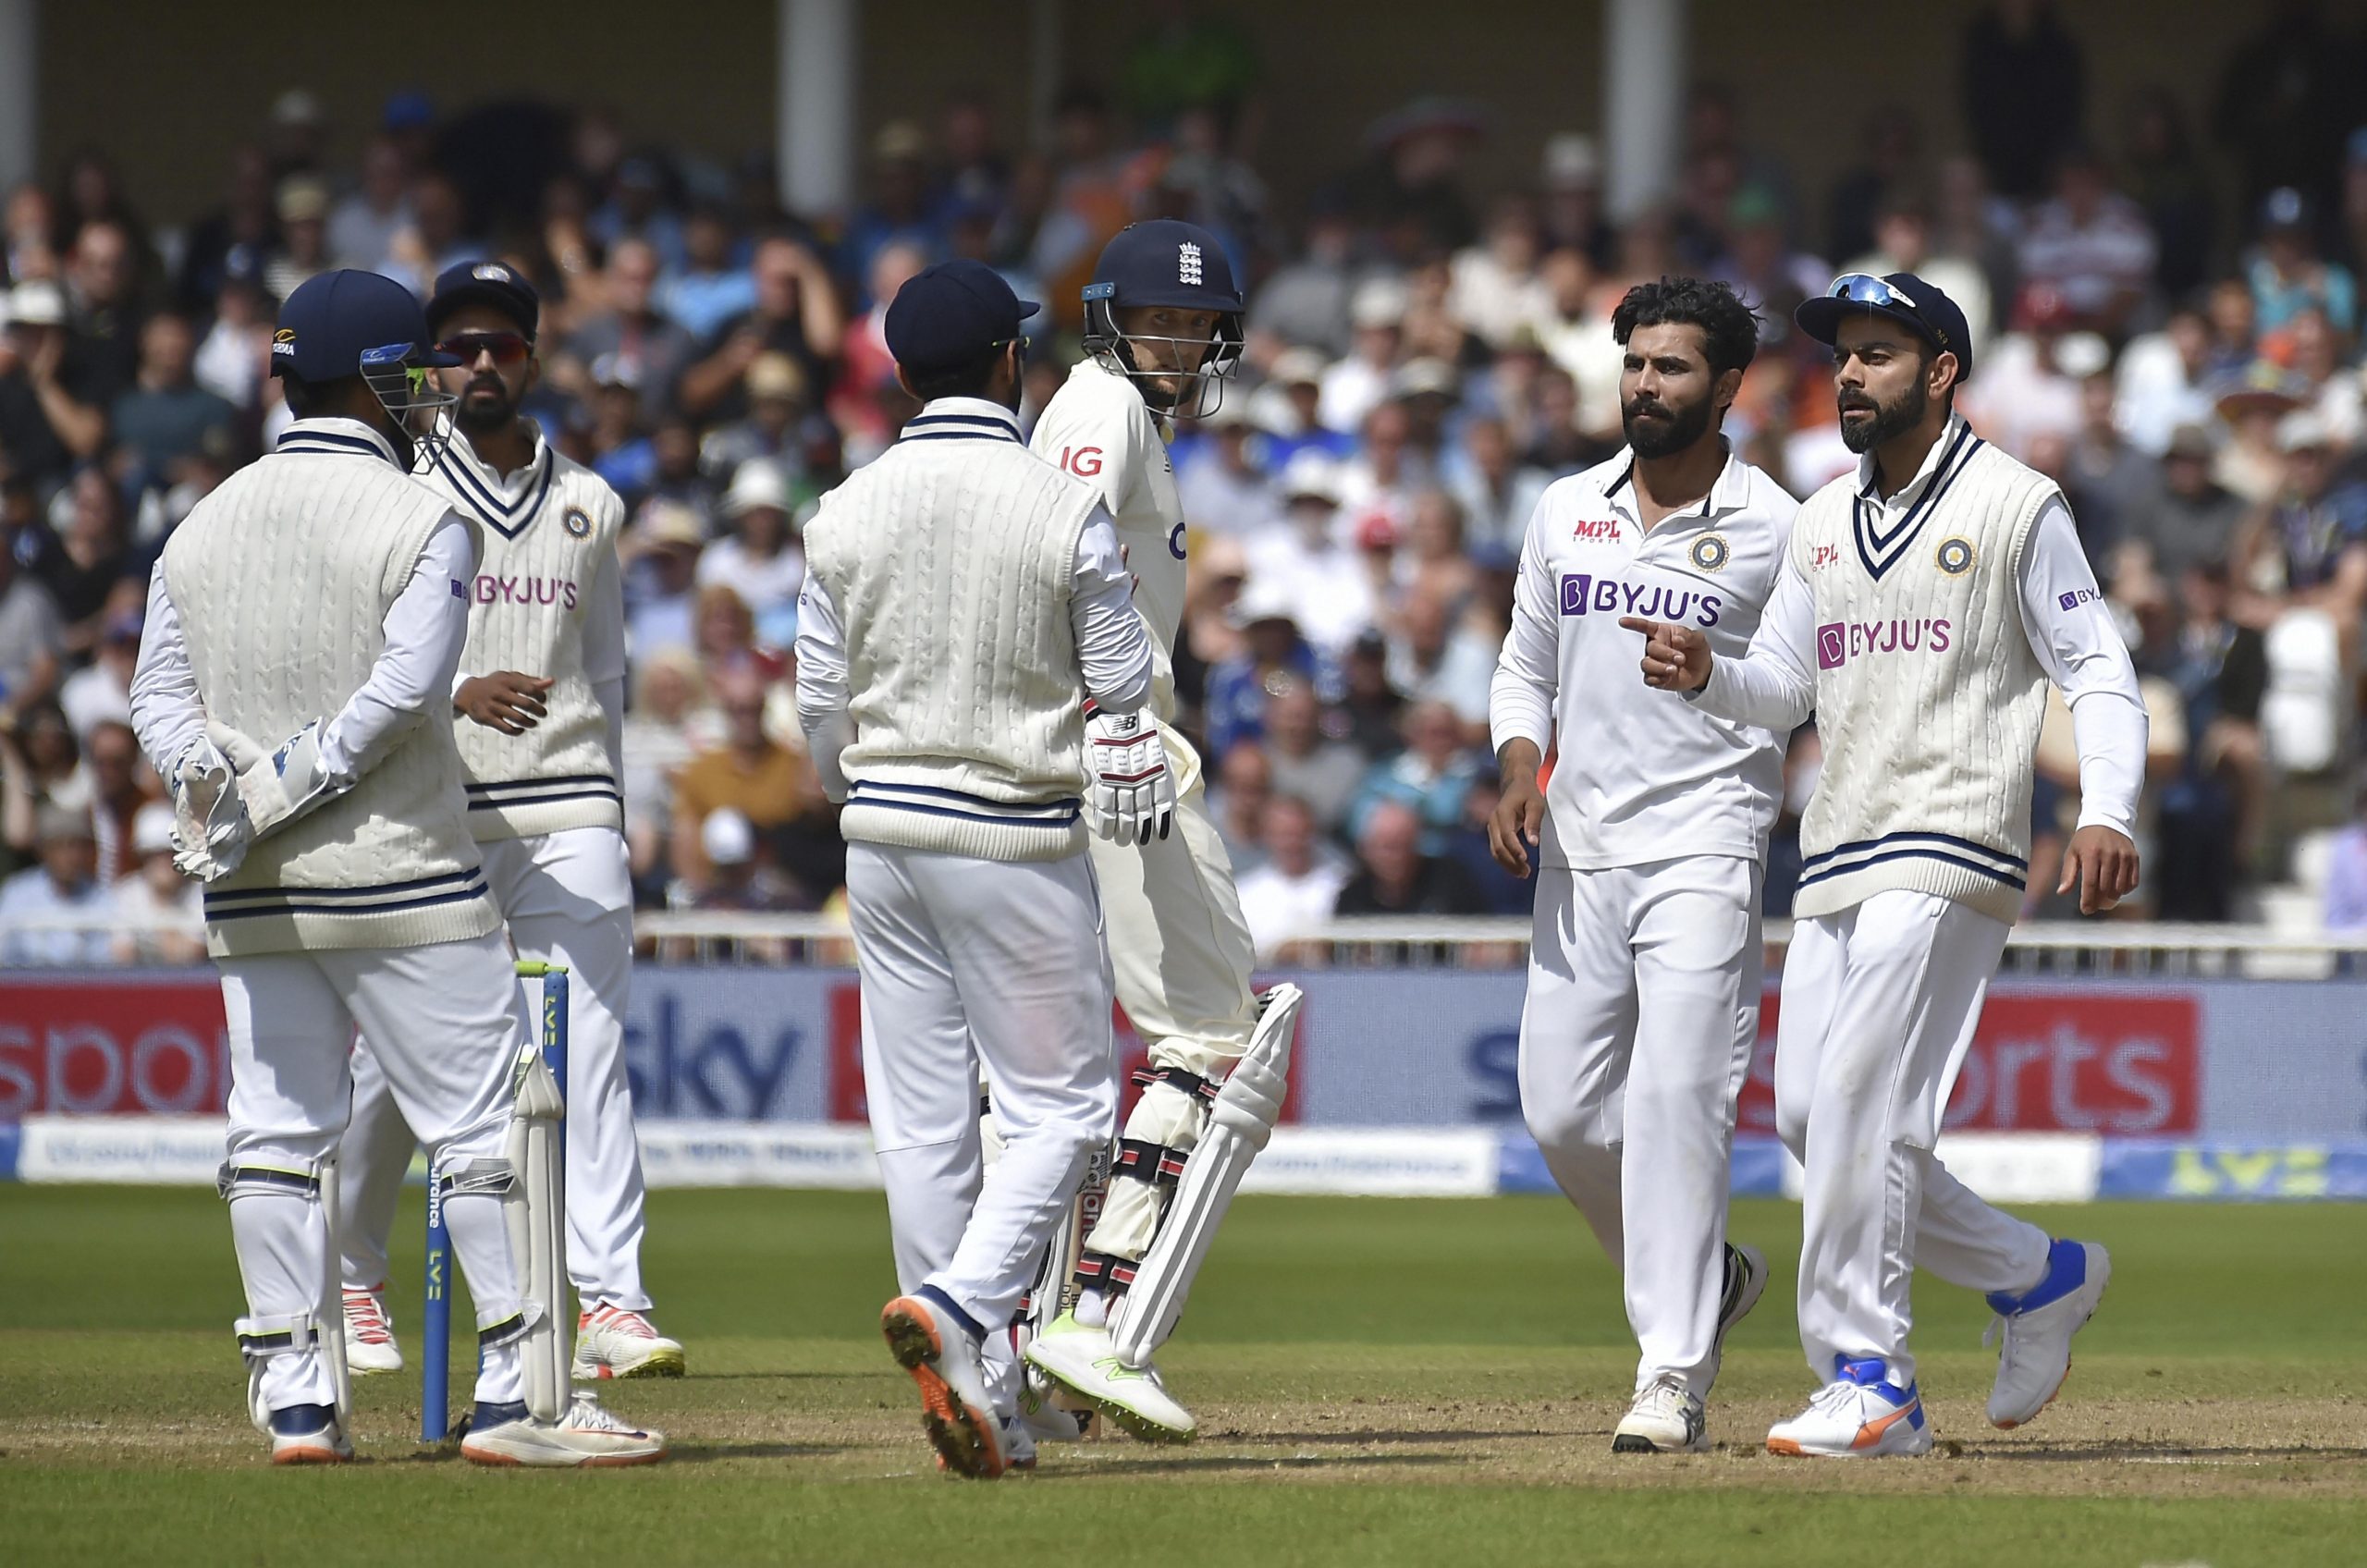 भारत-इंग्लैंड के बीच 5वां टेस्ट कैंसिल हुआ, भारत ने प्लेइंग XI उतारने में असमर्थता जताई